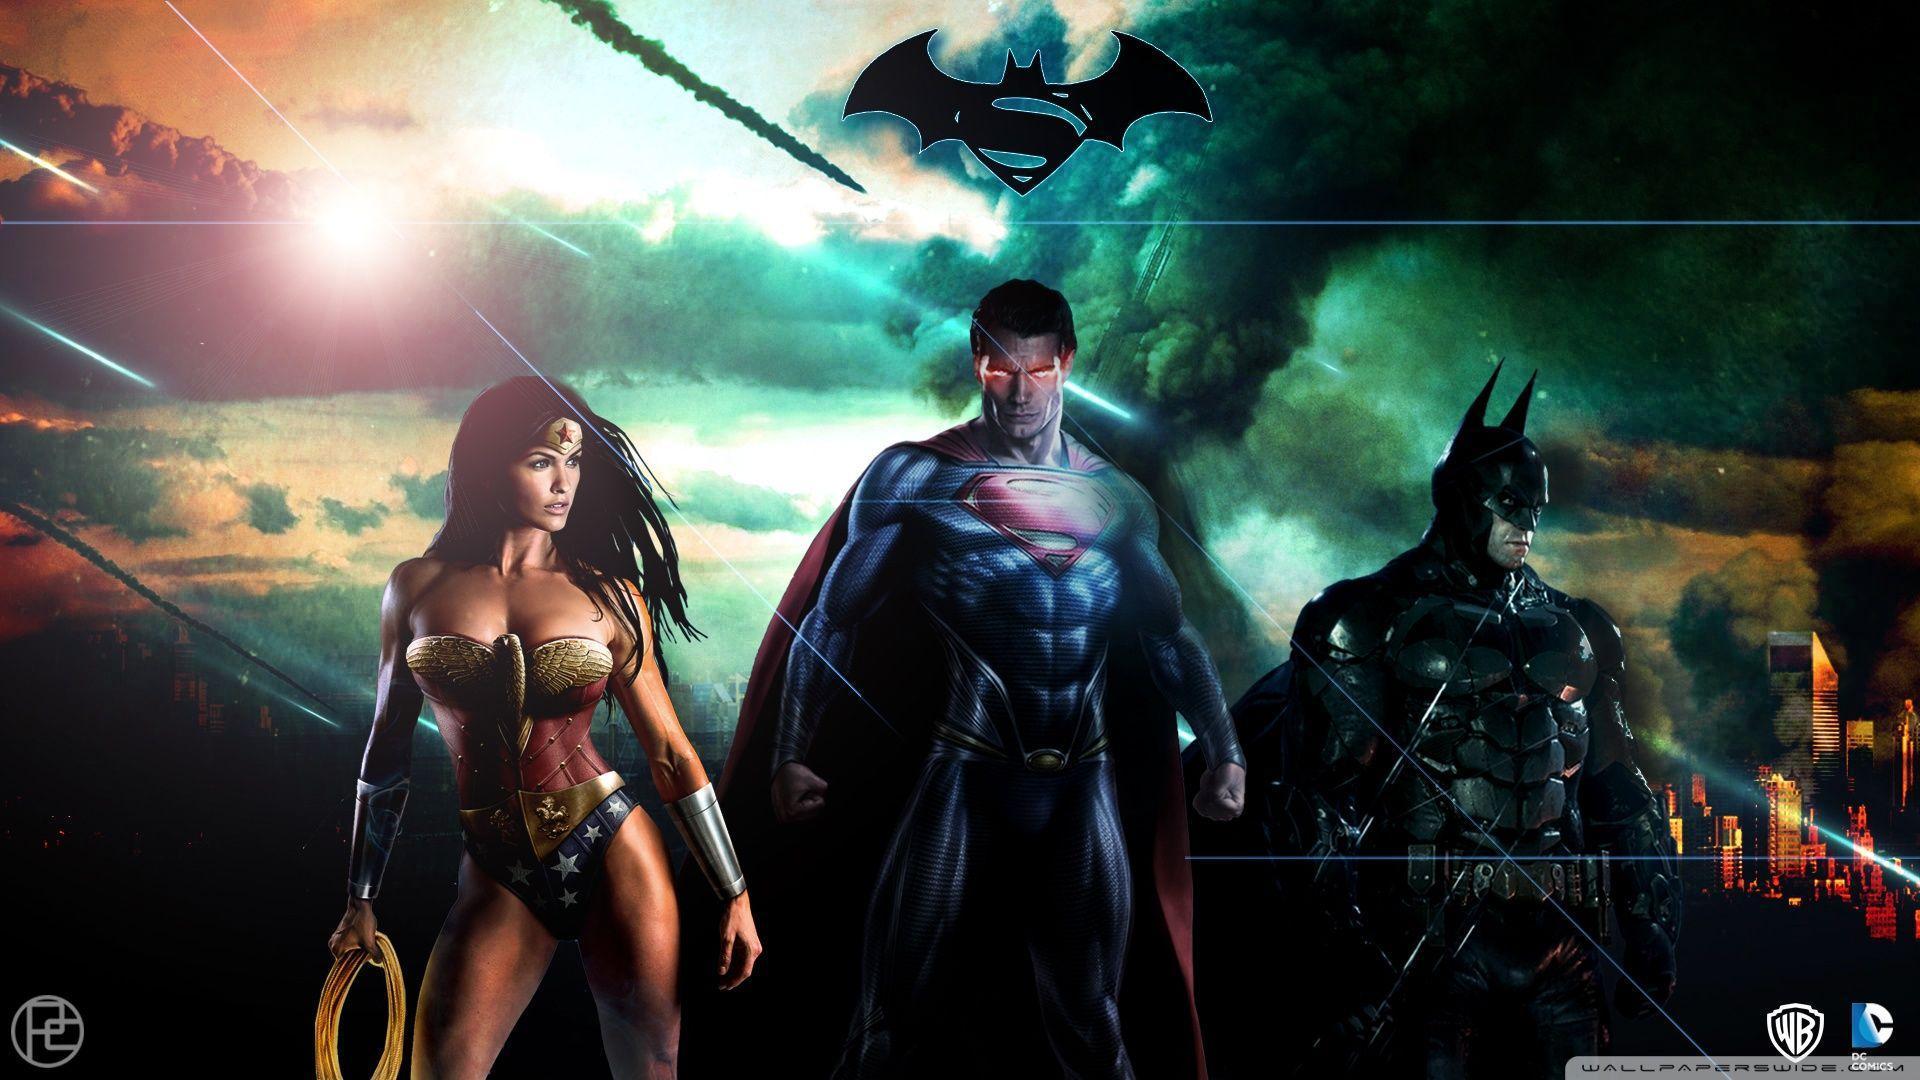 Superman Batman Wonderwoman DC HD desktop wallpaper, High